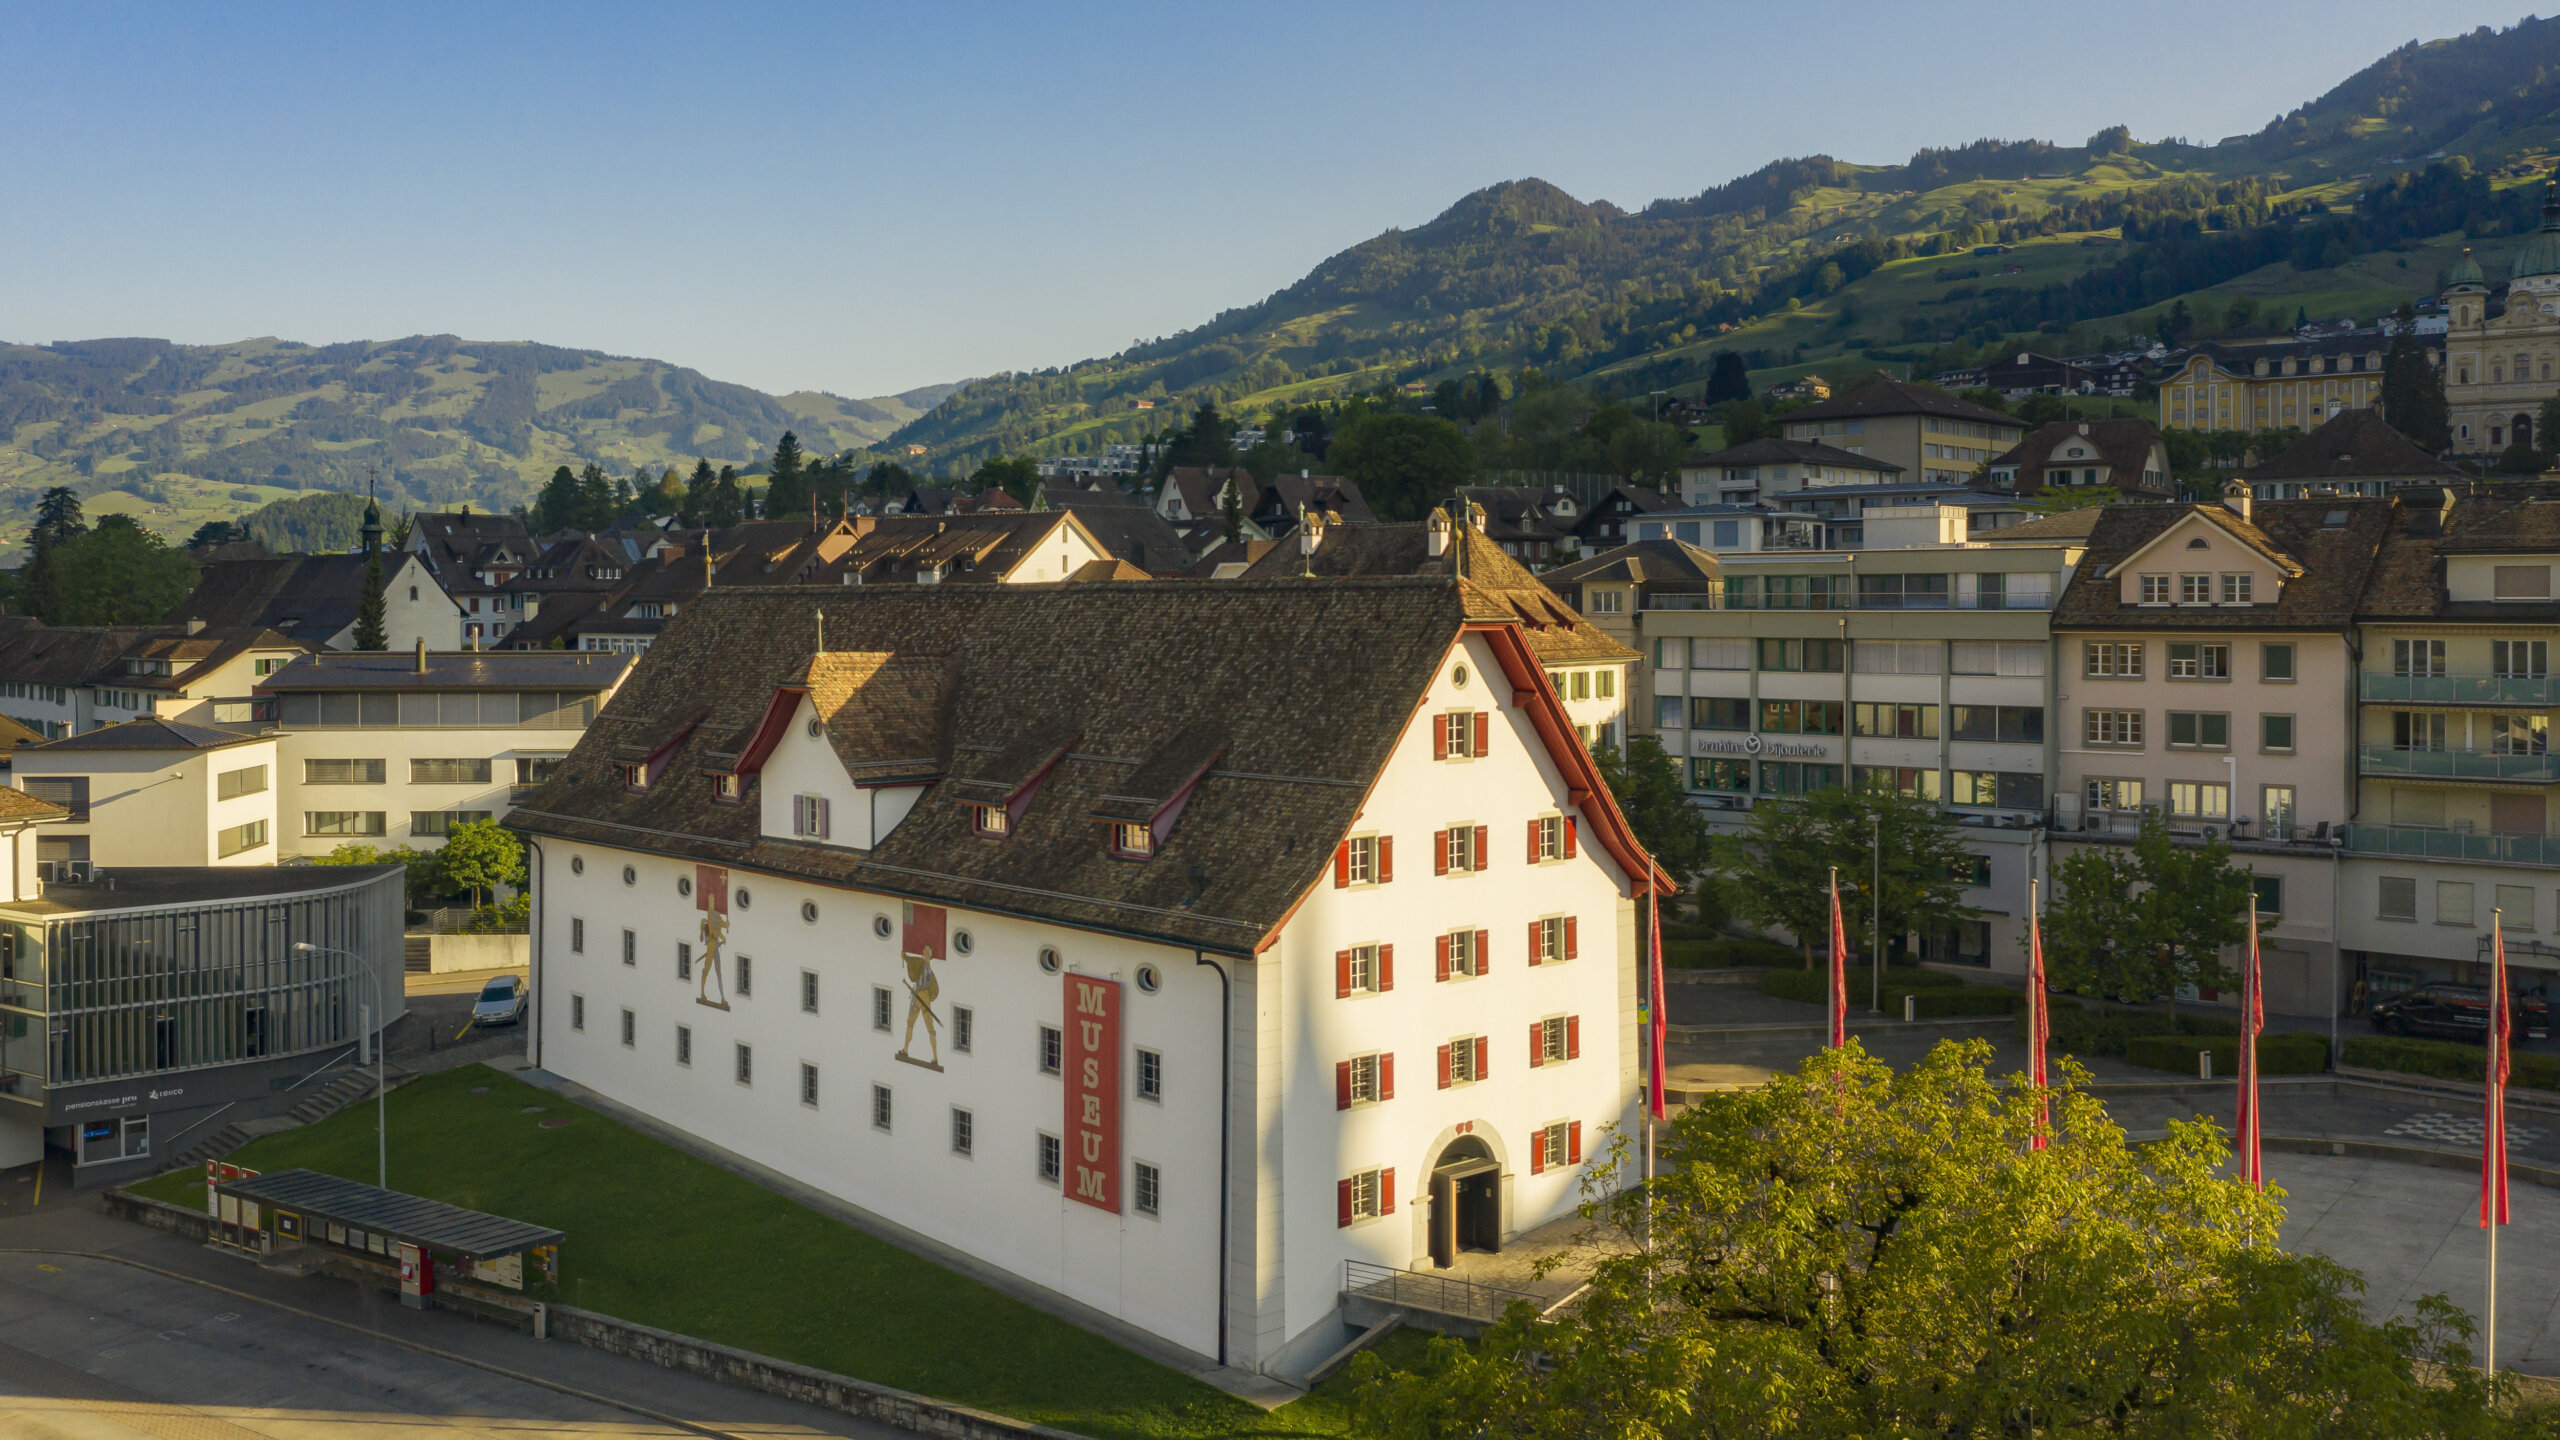 Aussenansicht des Forums Schweizer Geschichte Schwyz. Ein historischer Bau mit roten Fensterläden und zwei Wandmalereien, die Fahnenträger zeigen.